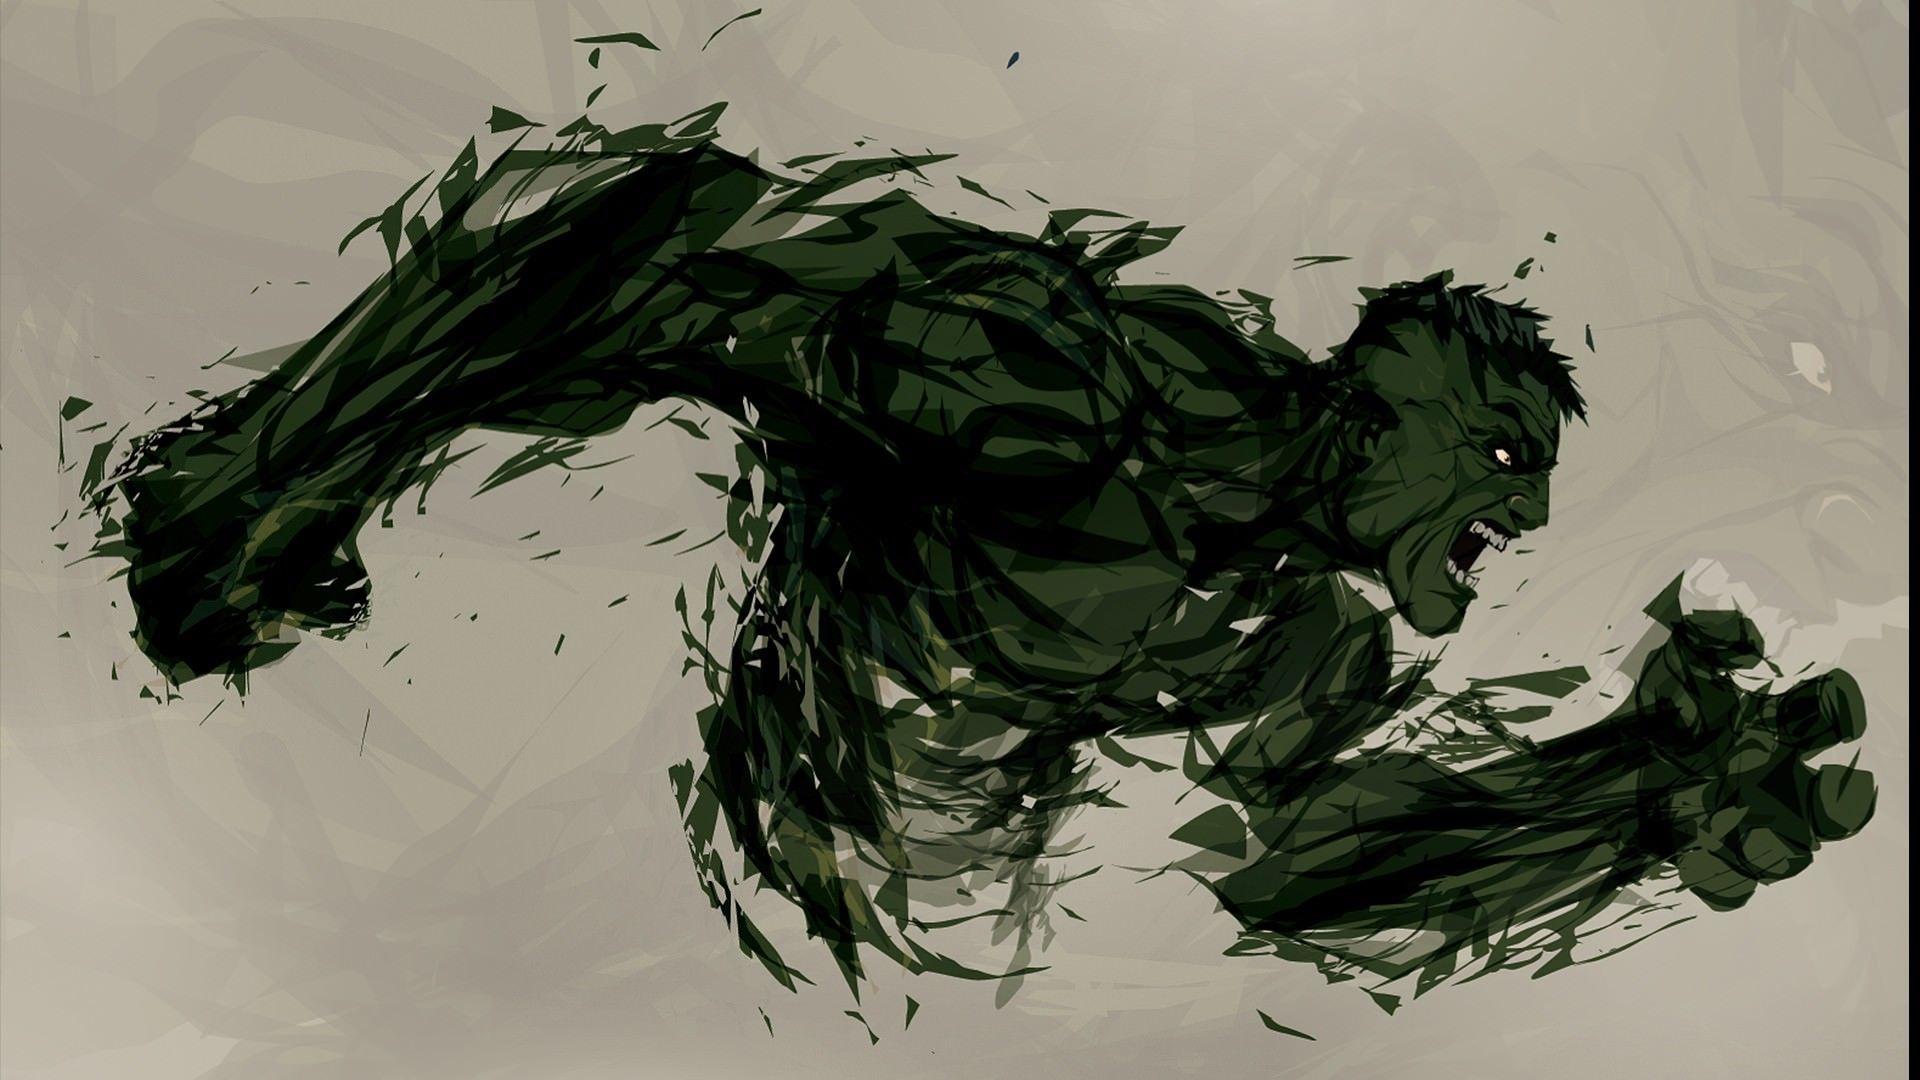 1920x1080 Hình nền nghệ thuật thay thế minh họa cho Hulk.  DigitalArt.io